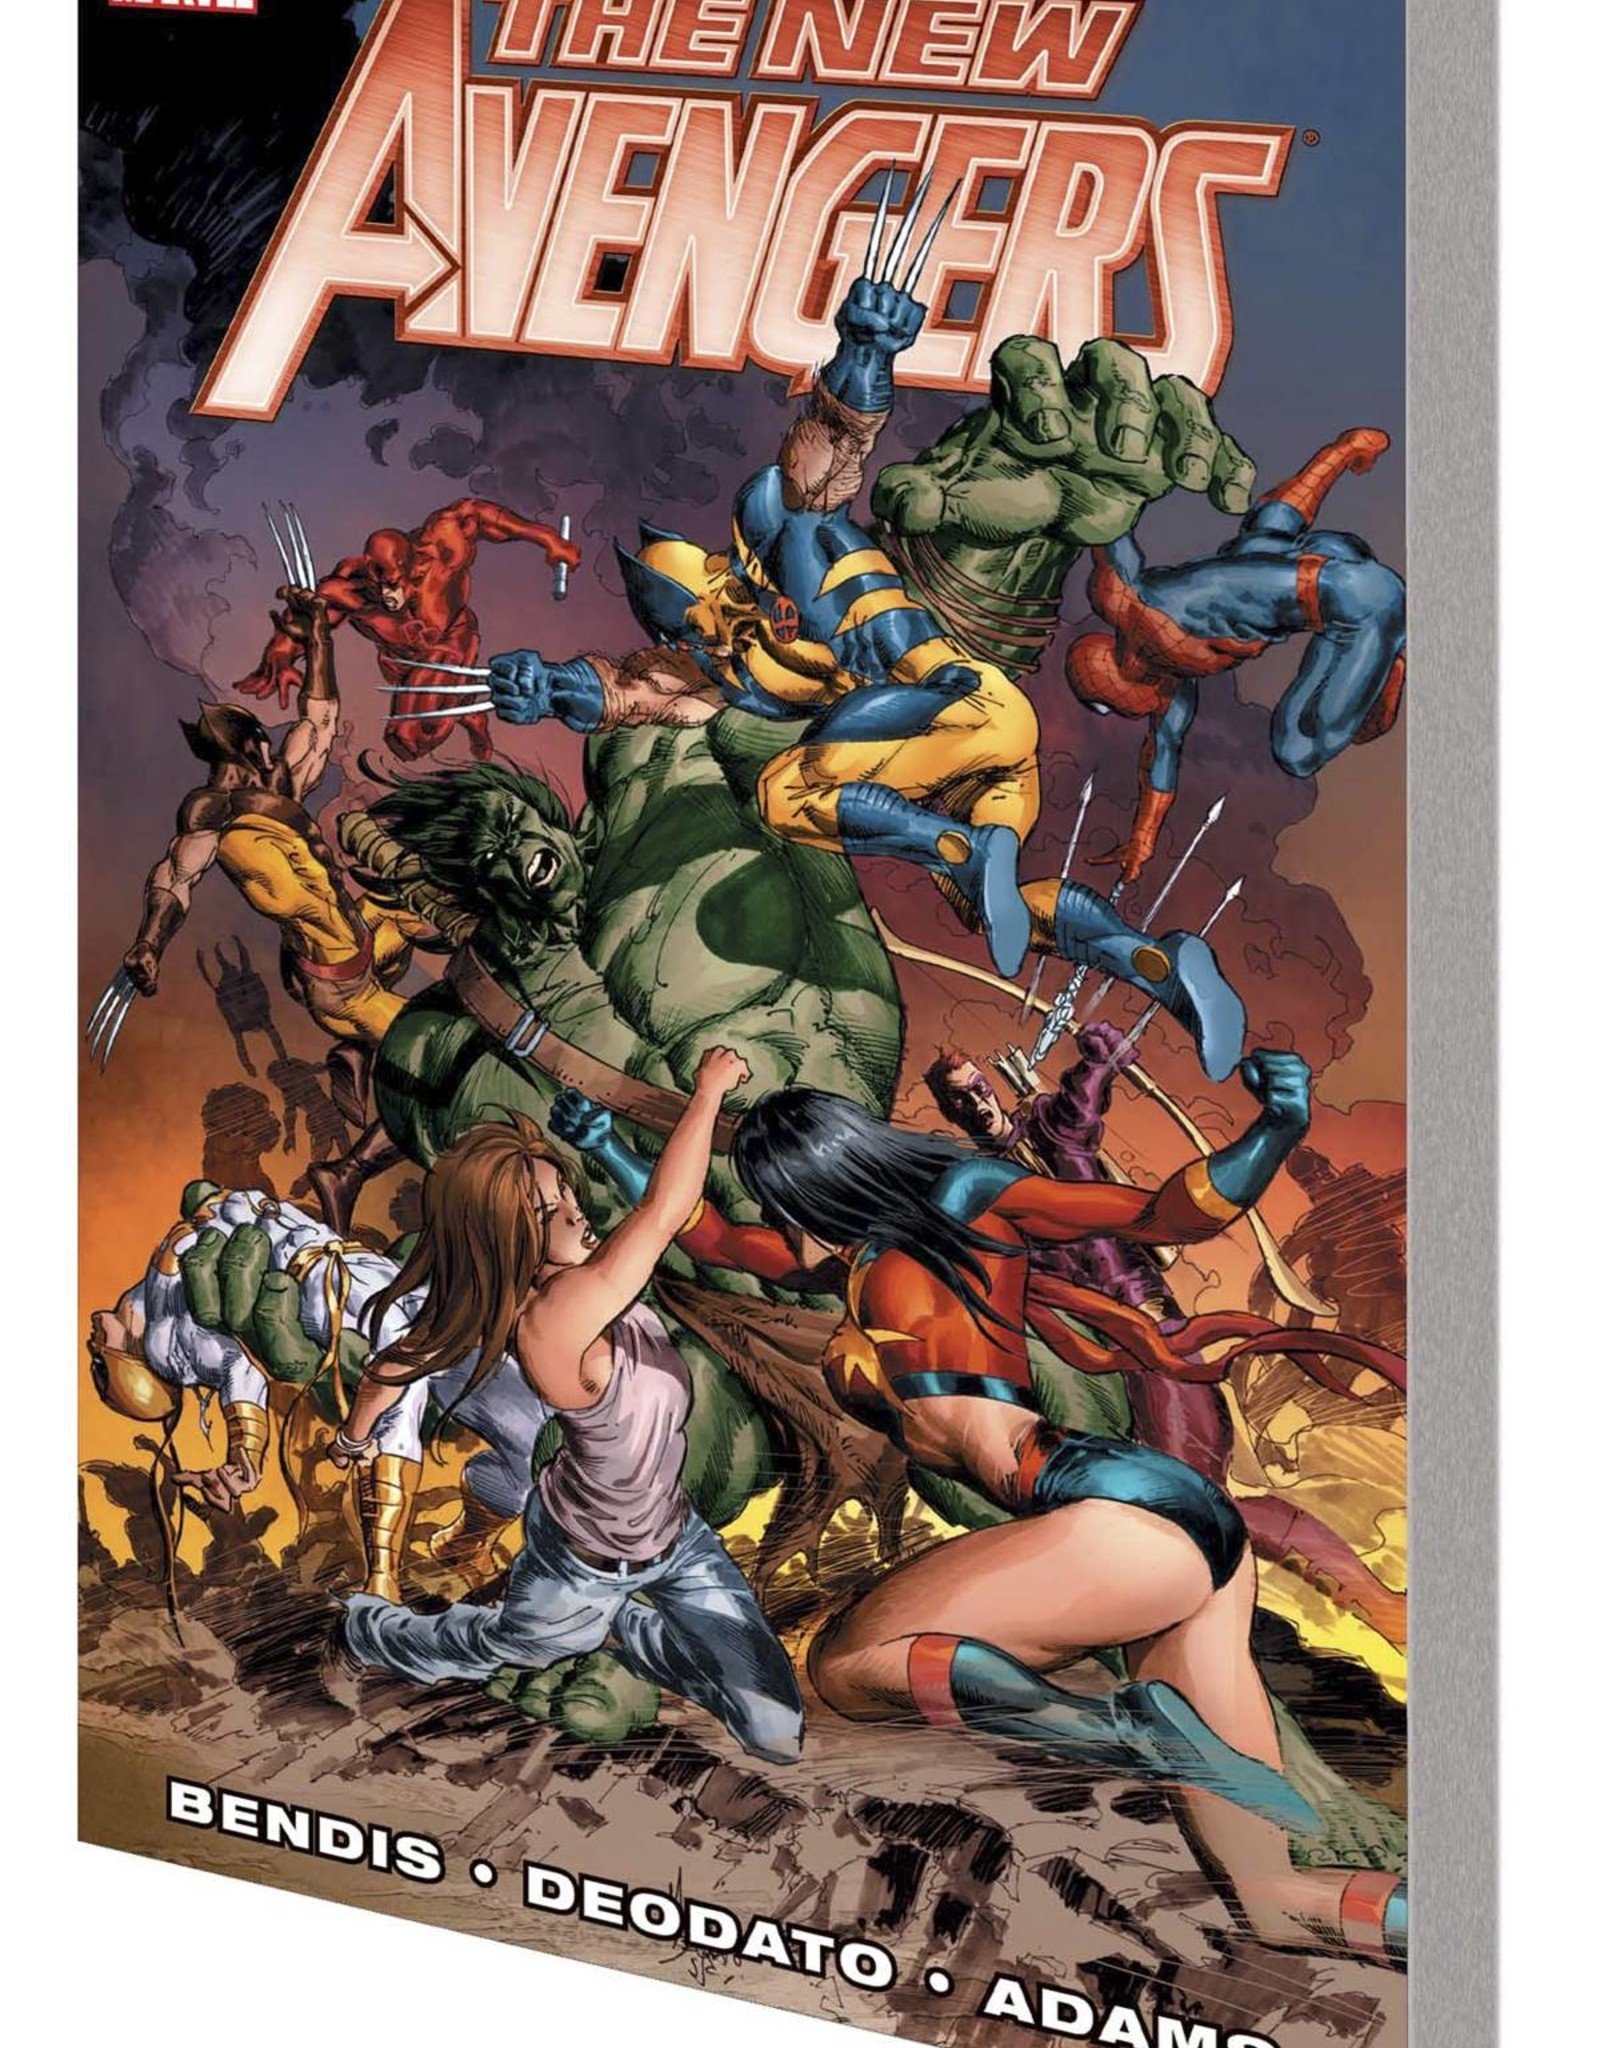 Marvel Comics New Avengers TP Volume 3